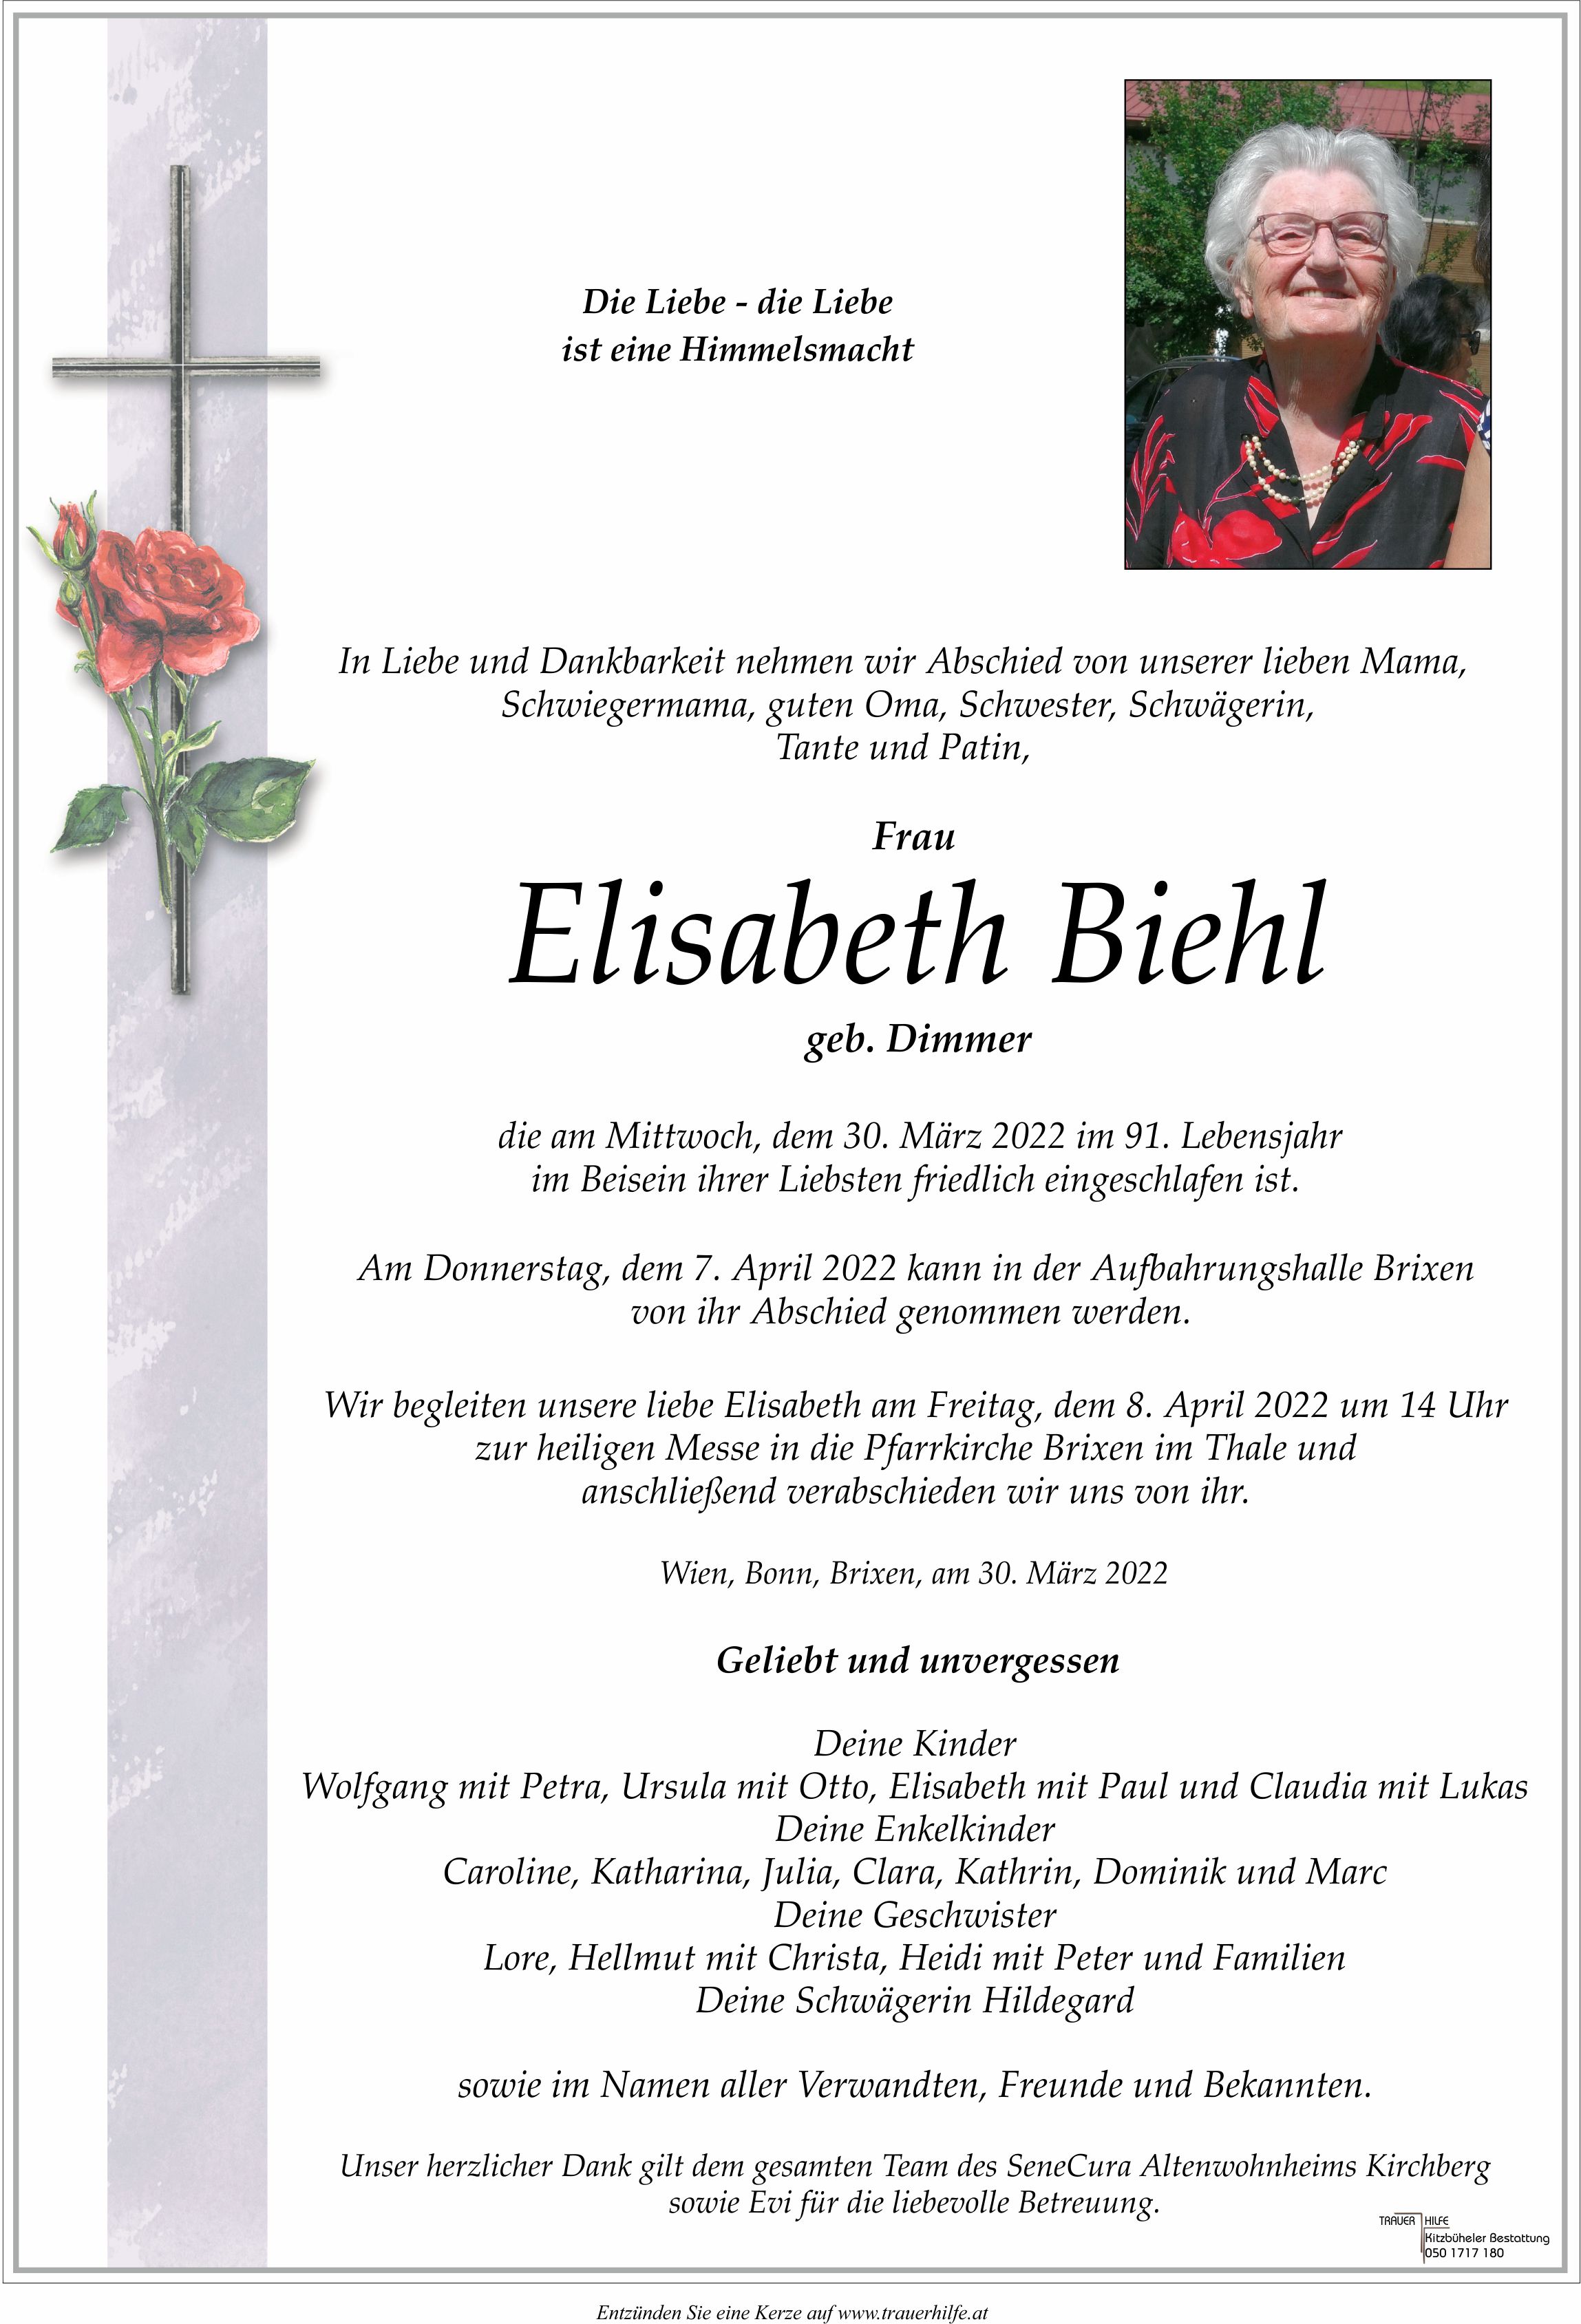 Elisabeth Biehl